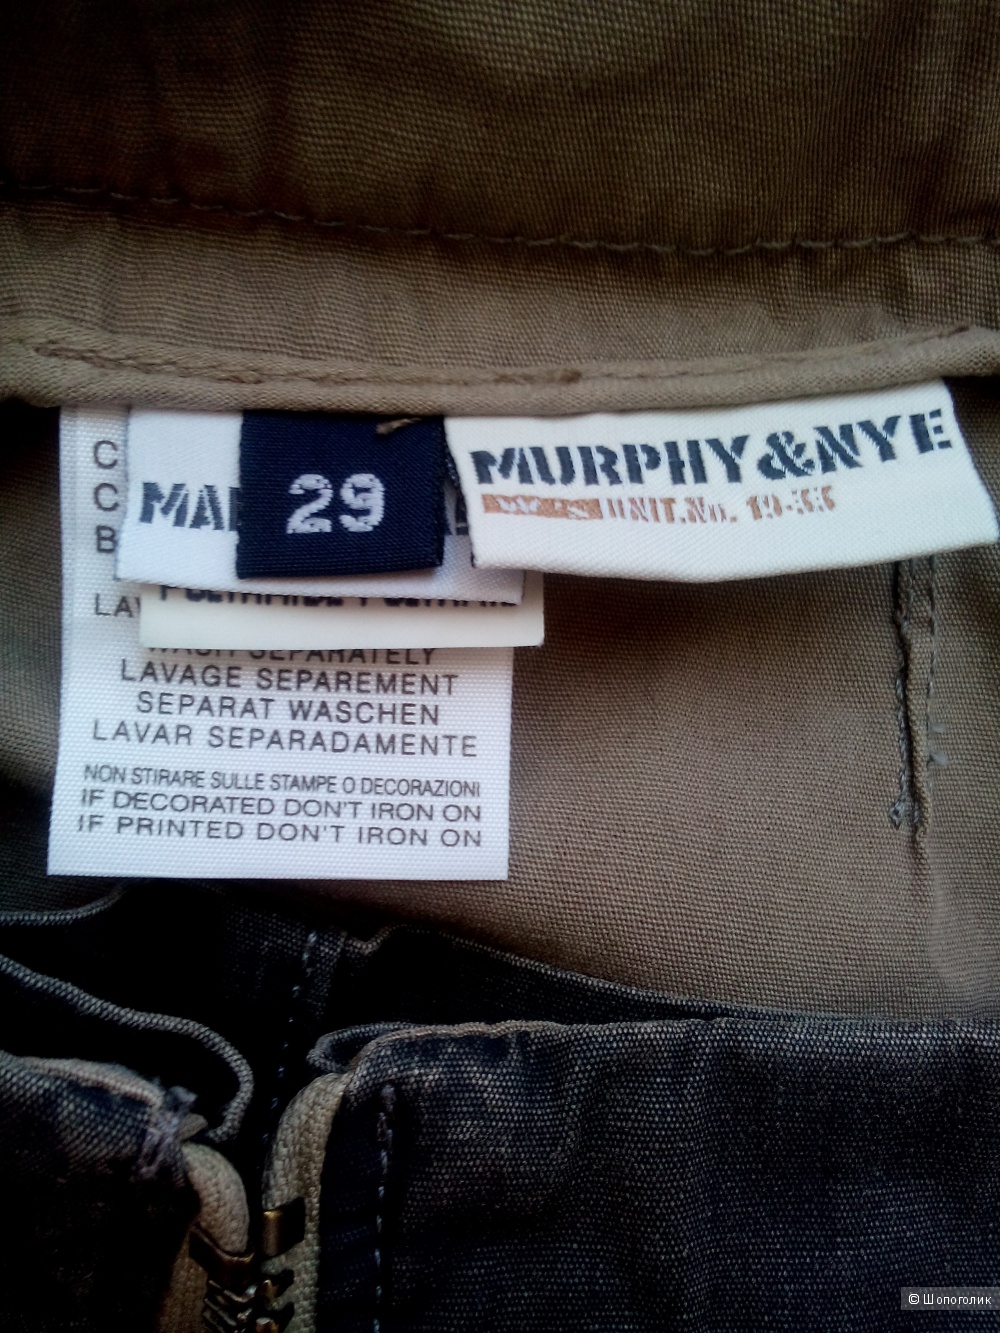 Юбка-шорты(кюлоты)Murphy&Nye Италия в размере 29